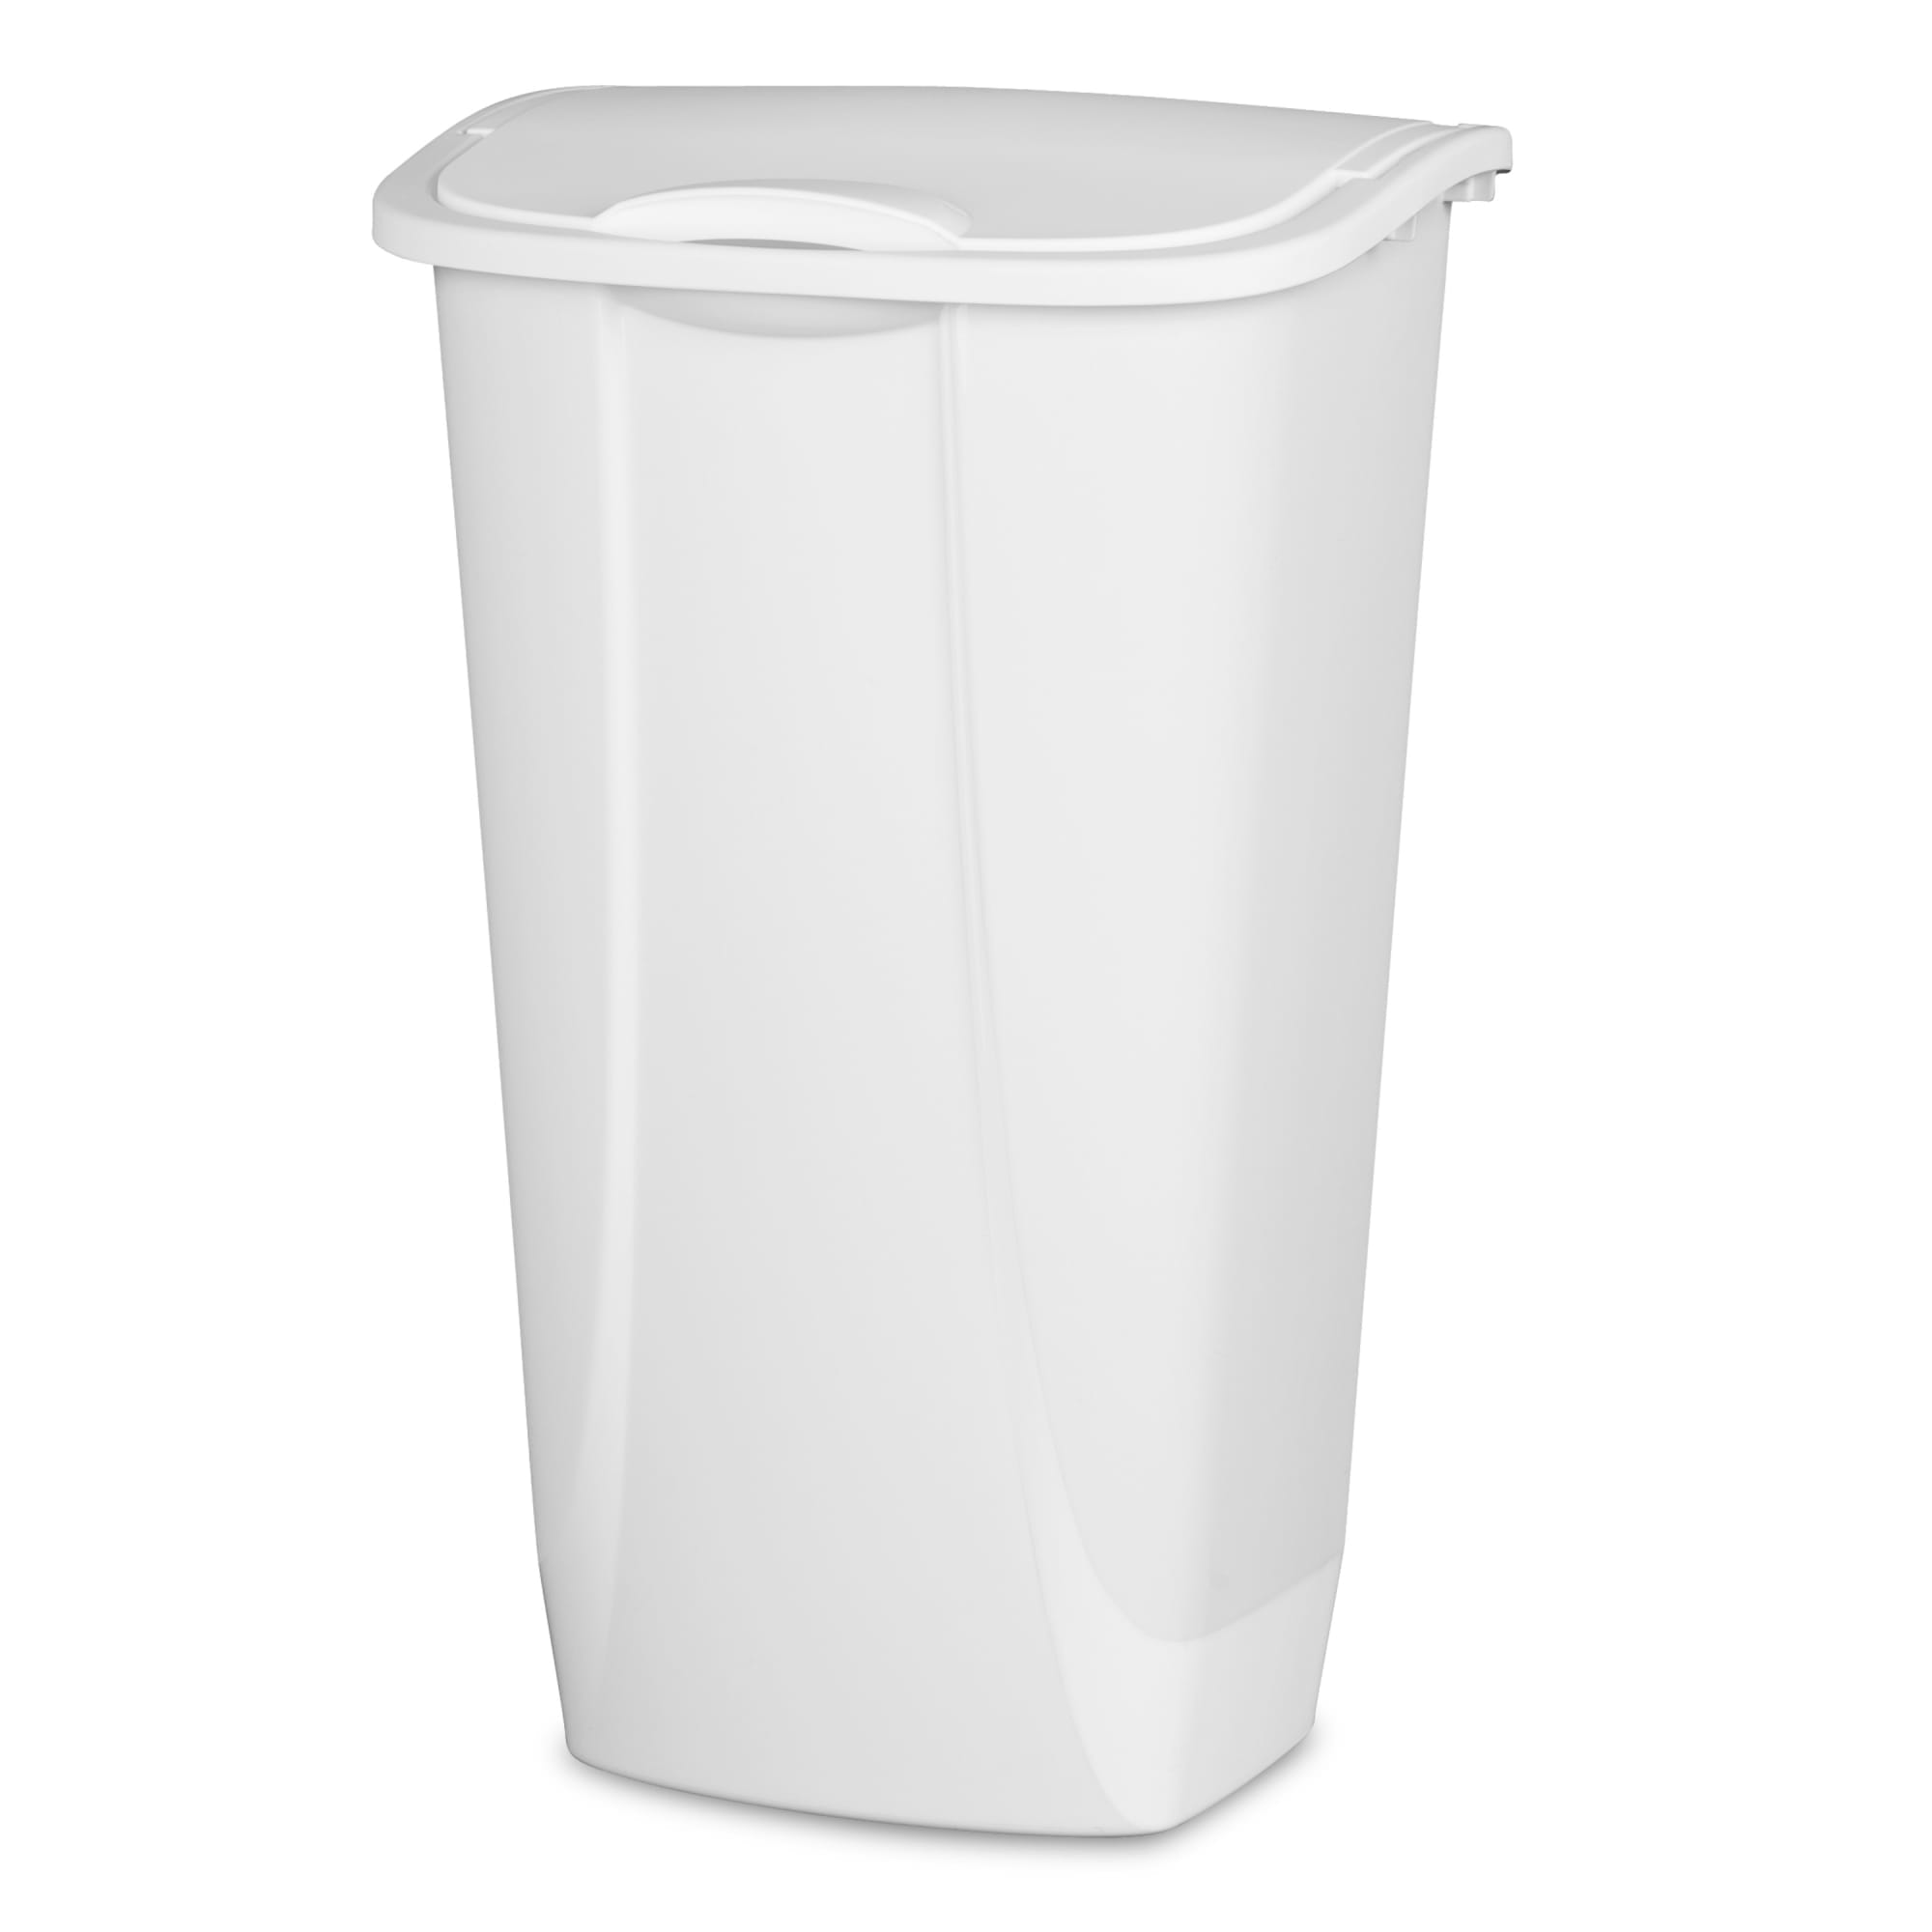 Sterilite 11 Gallon / 42 Liter SwingTop Wastebasket White $12.00 EACH, CASE PACK OF 6